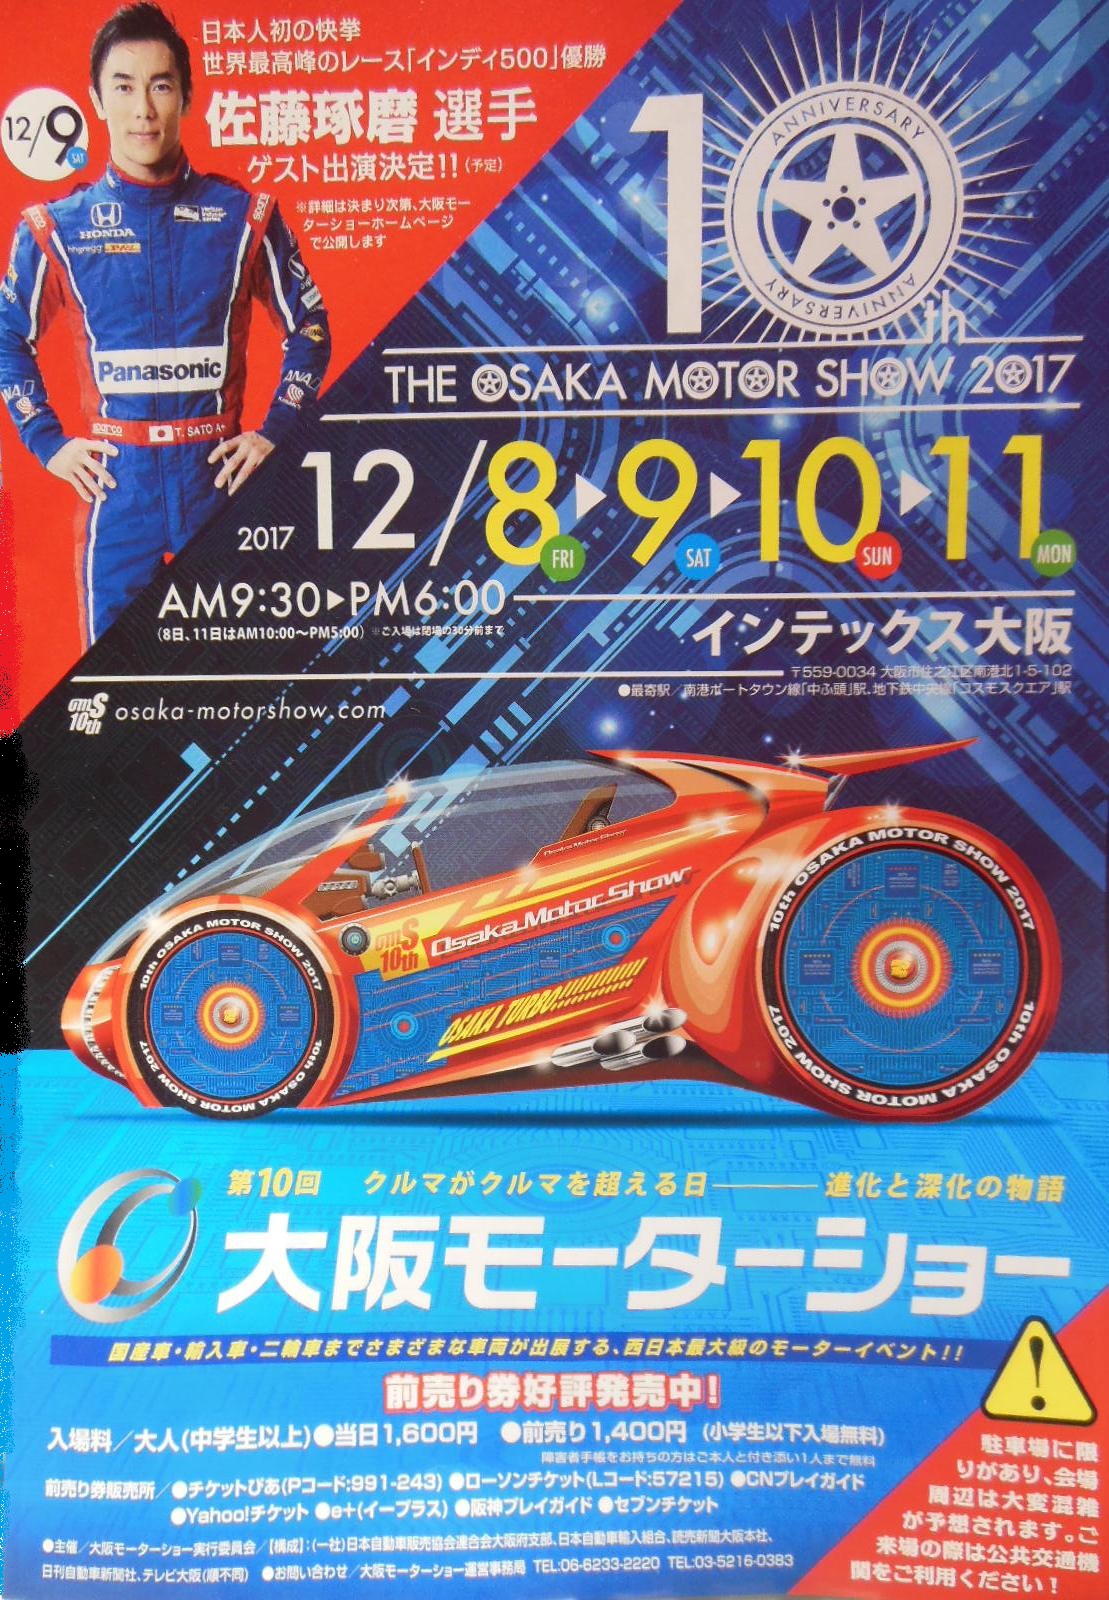 大阪モーターショーが開催されます。